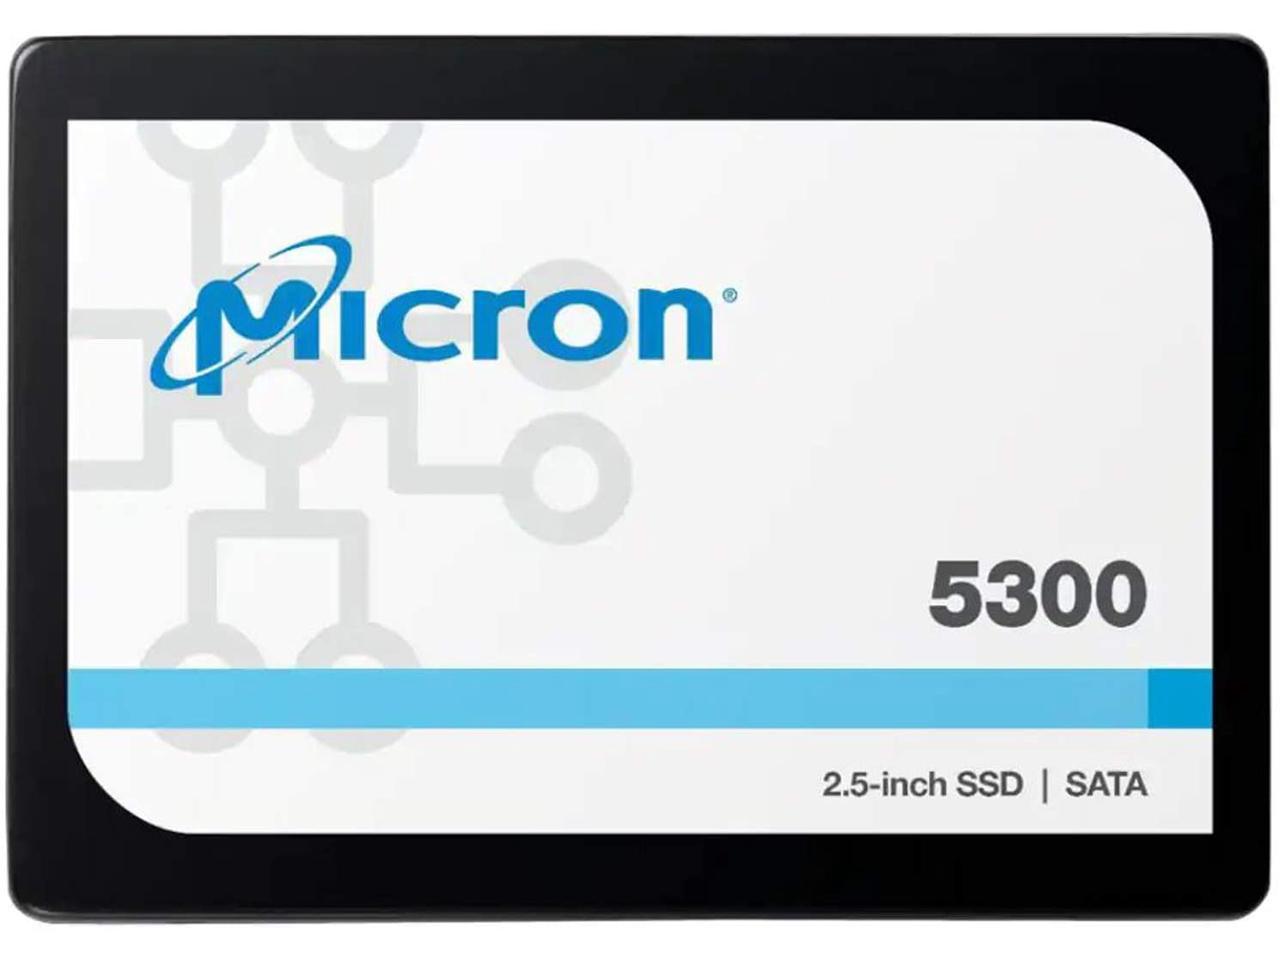 Micron 5300 PRO 960GB SATA 2.5" (7mm) Non-SED Enterprise SSD